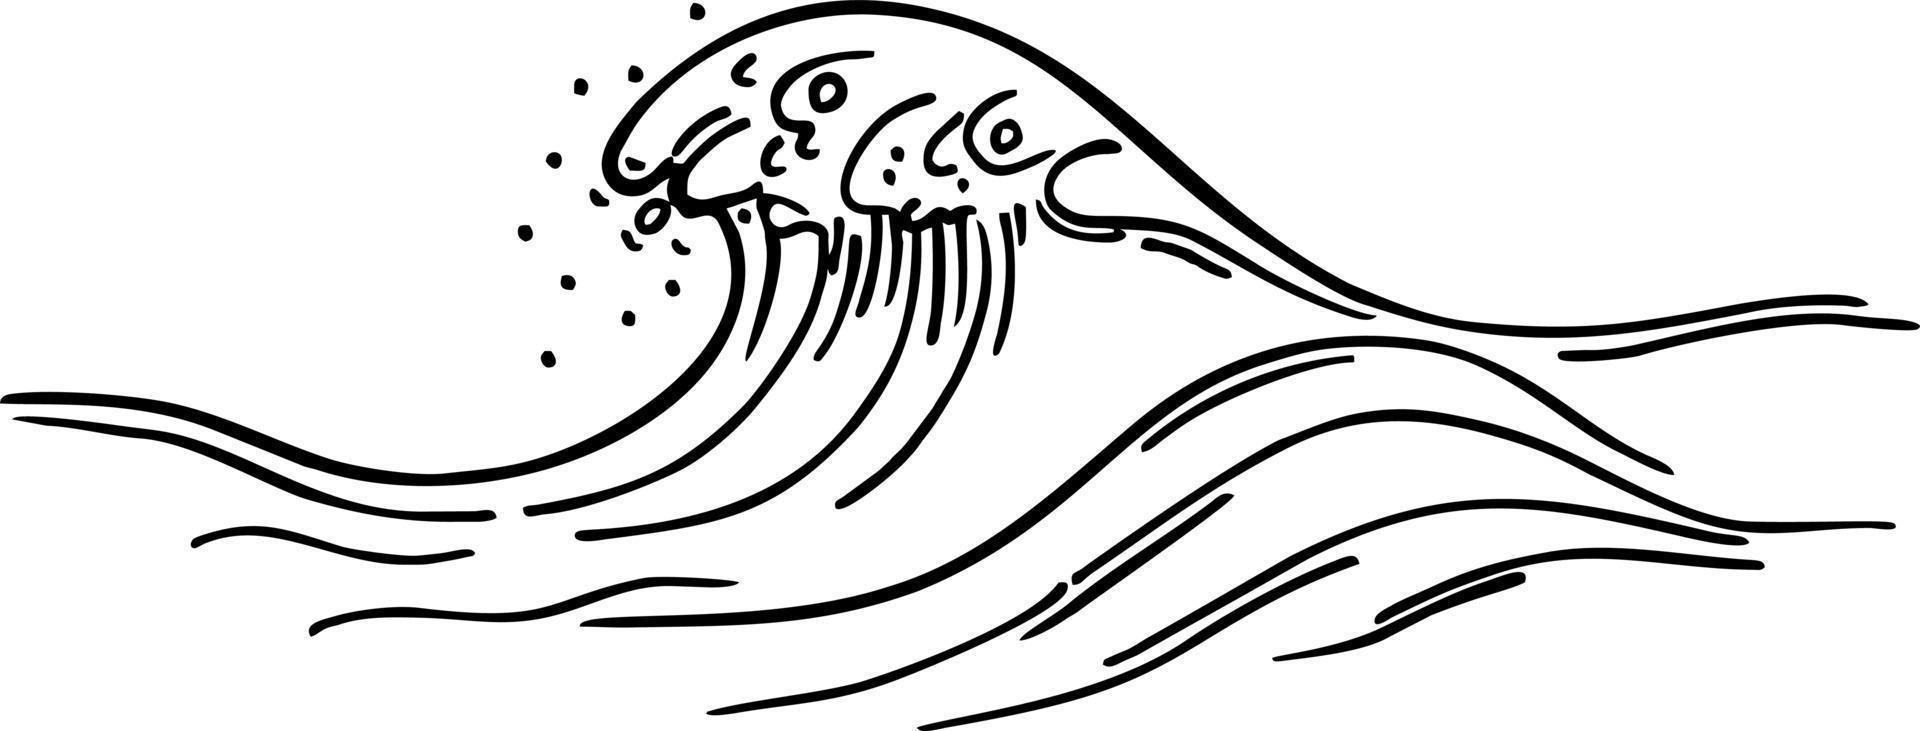 kontur av havsvåg. havets vågkammen. handritad skiss linjär monokrom vektorillustration. vektor